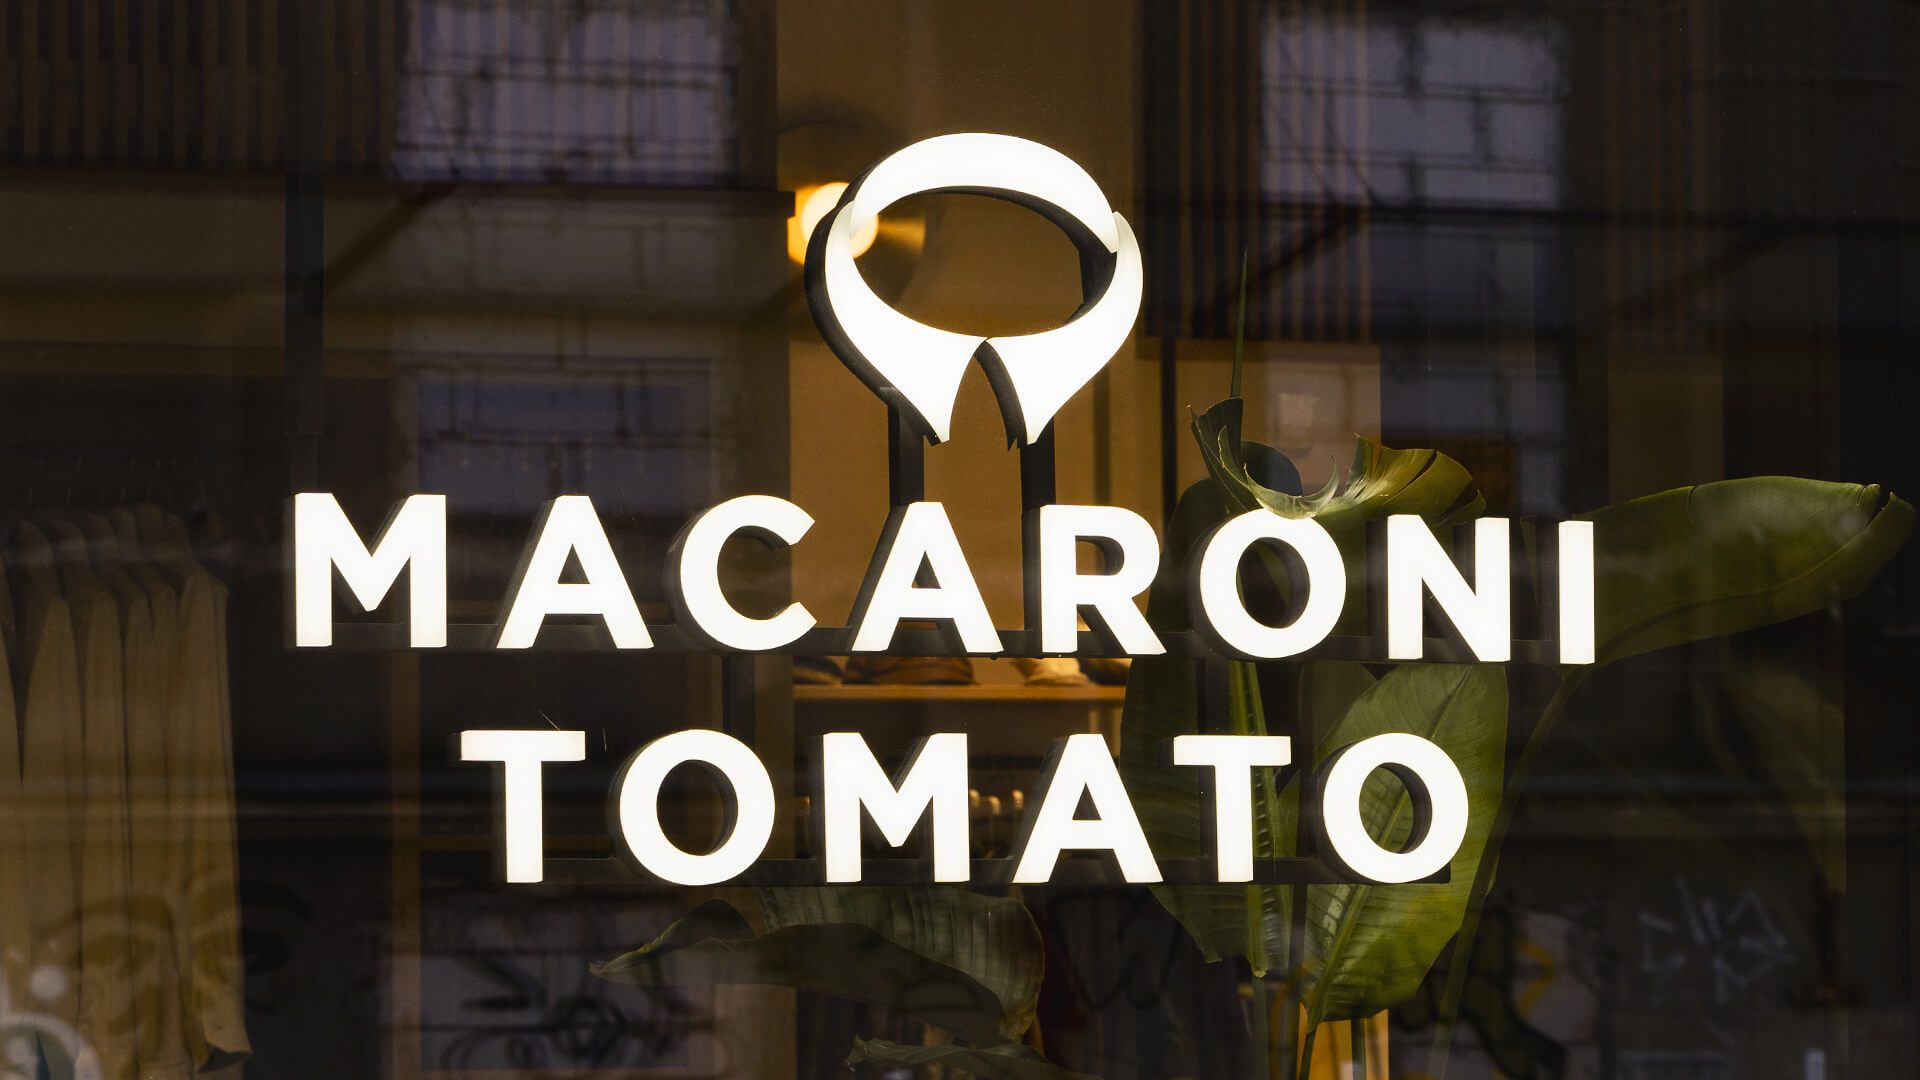 Macaroni Tomaat - Lichtgevende letters volledig aan zijkant en voorkant, wit van kleur, LED.